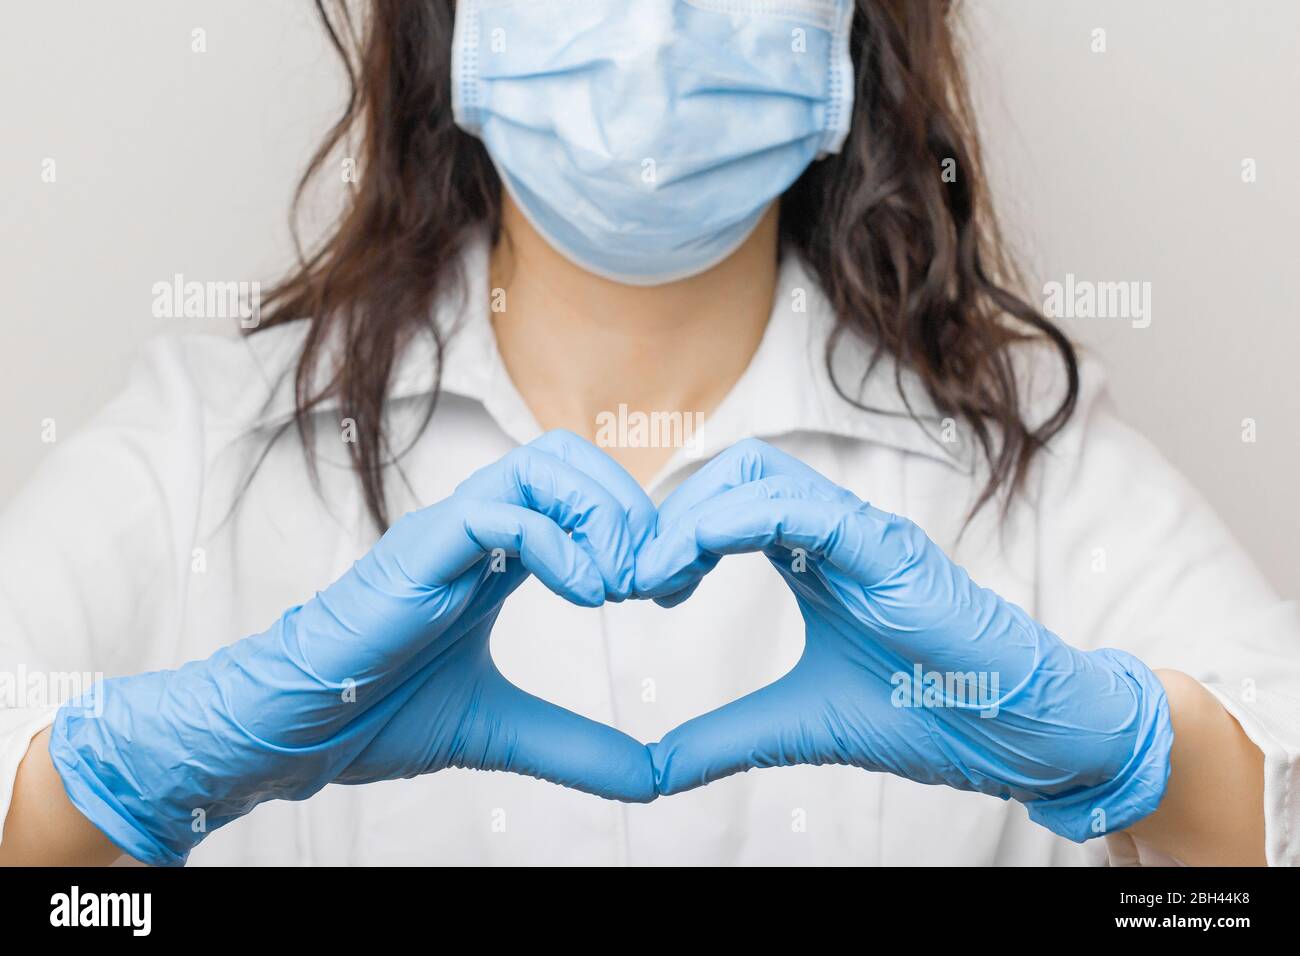 Stoppen Sie SARSCoV, Virus 2020, chinesisches Virus COVID-19. Damen Hand in blauen medizinischen Handschuhen zeigen Herz Zeichen. Konzept des Schutzes gegen HIV. Arzt in Stockfoto